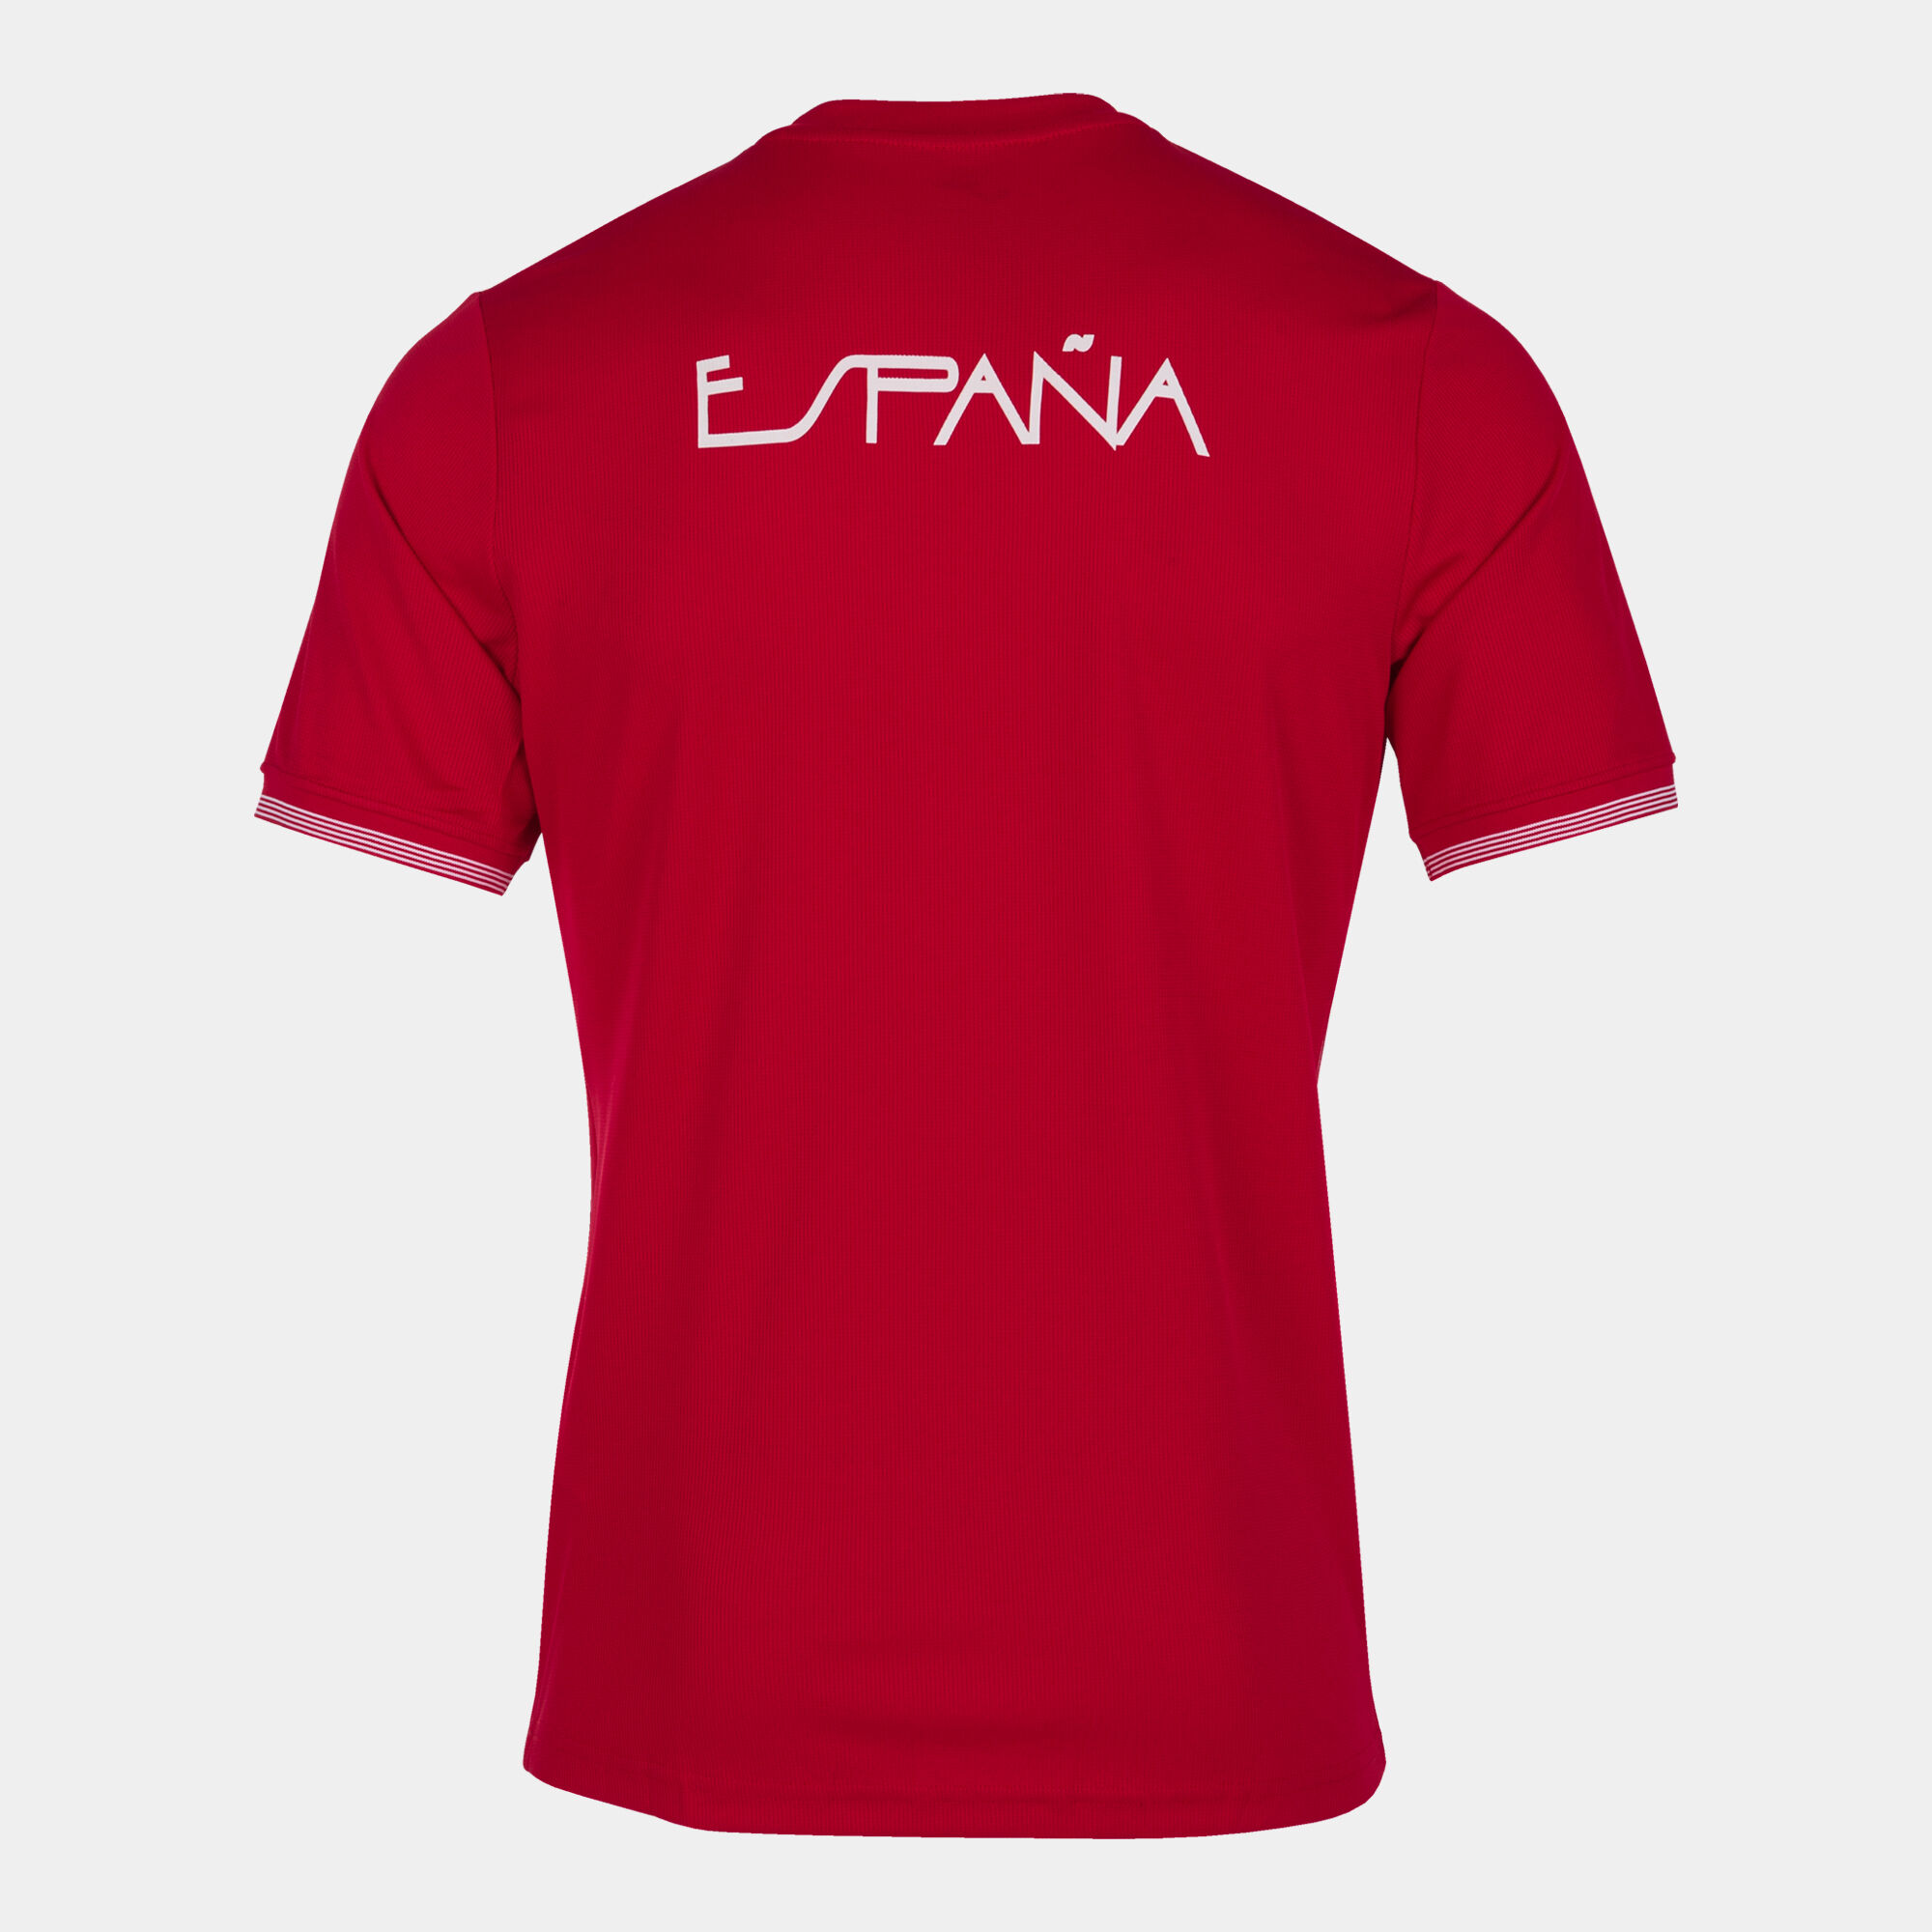 Shirt short sleeve Spanish Olympic Committee